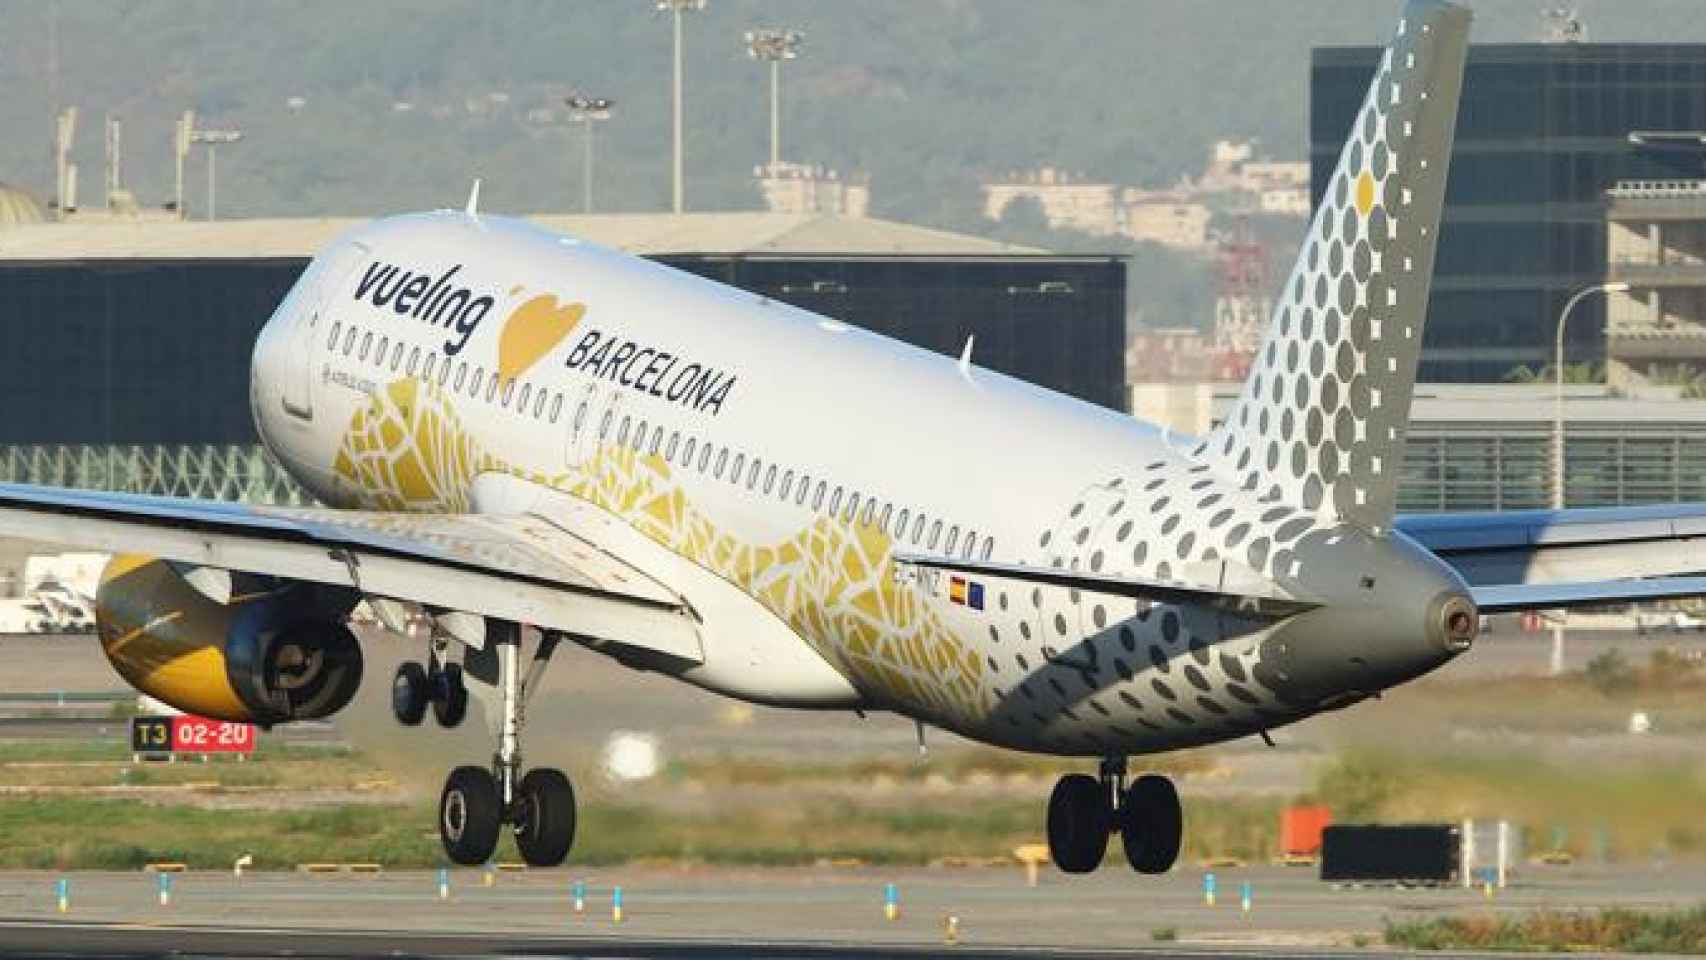 Imagen de un avión de Vueling despegando del aeropuerto de Barcelona-El Prat / CG